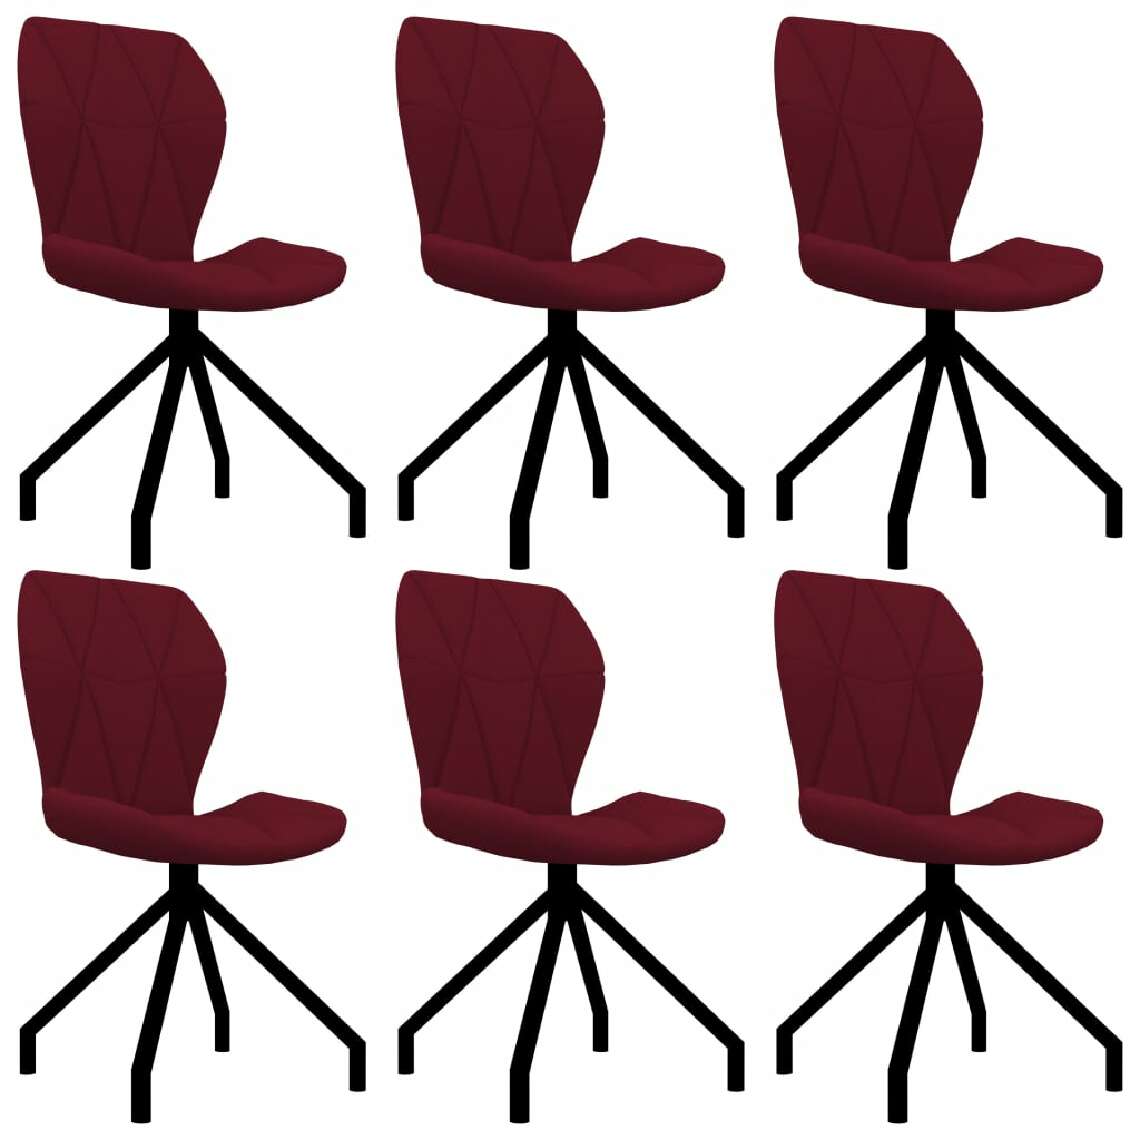 Chunhelife - Chunhelife Chaises de salle à manger 6 pcs Rouge bordeaux Similicuir - Chaises